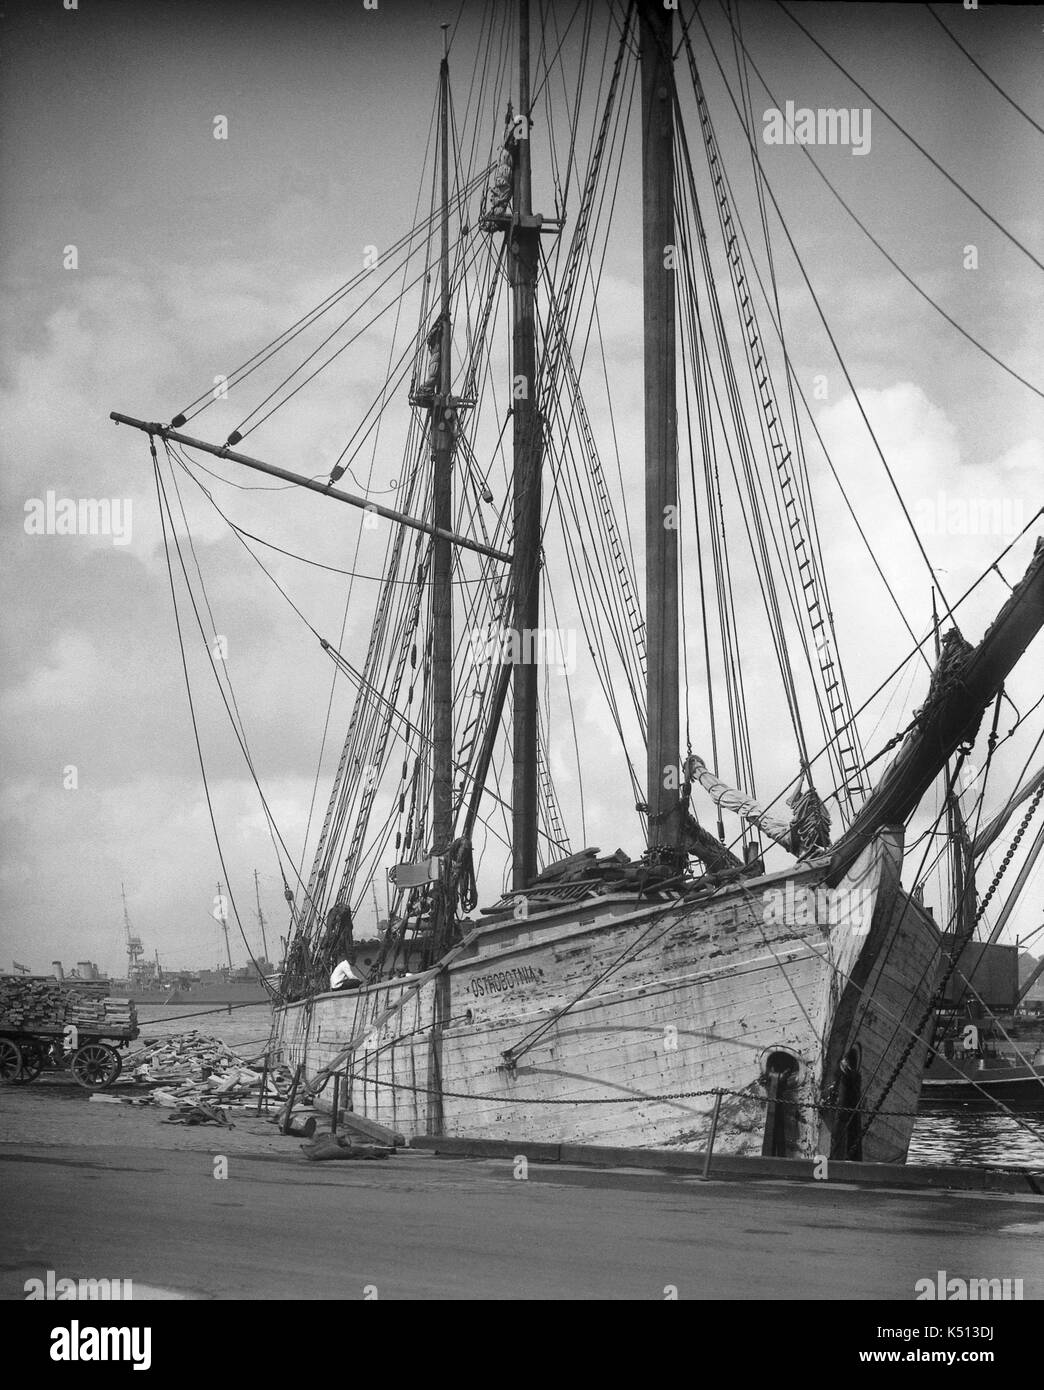 AJAXNETPHOTO. 1919 - 1930 (ca.). PORTSMOUTH, England. - 3 Mast Schoner - DAS HOLZ GESCHÄLT SEGELN SCHONER OSTROBOTNIA ANKER an FLATHOUSE KAI beim Entladen einer Ladung Holz. Die 800 Tonnen schwere Schiff wurde 1919 in JAKOBSTAD UND VERSCHROTTET im Jahre 1934. Schiff WAR IM BESITZ VON GUSTAF ERIKSON Aland Inseln von 1925-1934. Fotograf: unbekannt © DIGITAL IMAGE COPYRIGHT AJAX VINTAGE BILDARCHIV QUELLE: AJAX VINTAGE BILDARCHIV SAMMLUNG REF: () AVL SHI OSTROBOTNIA PMO 1925 01 Stockfoto